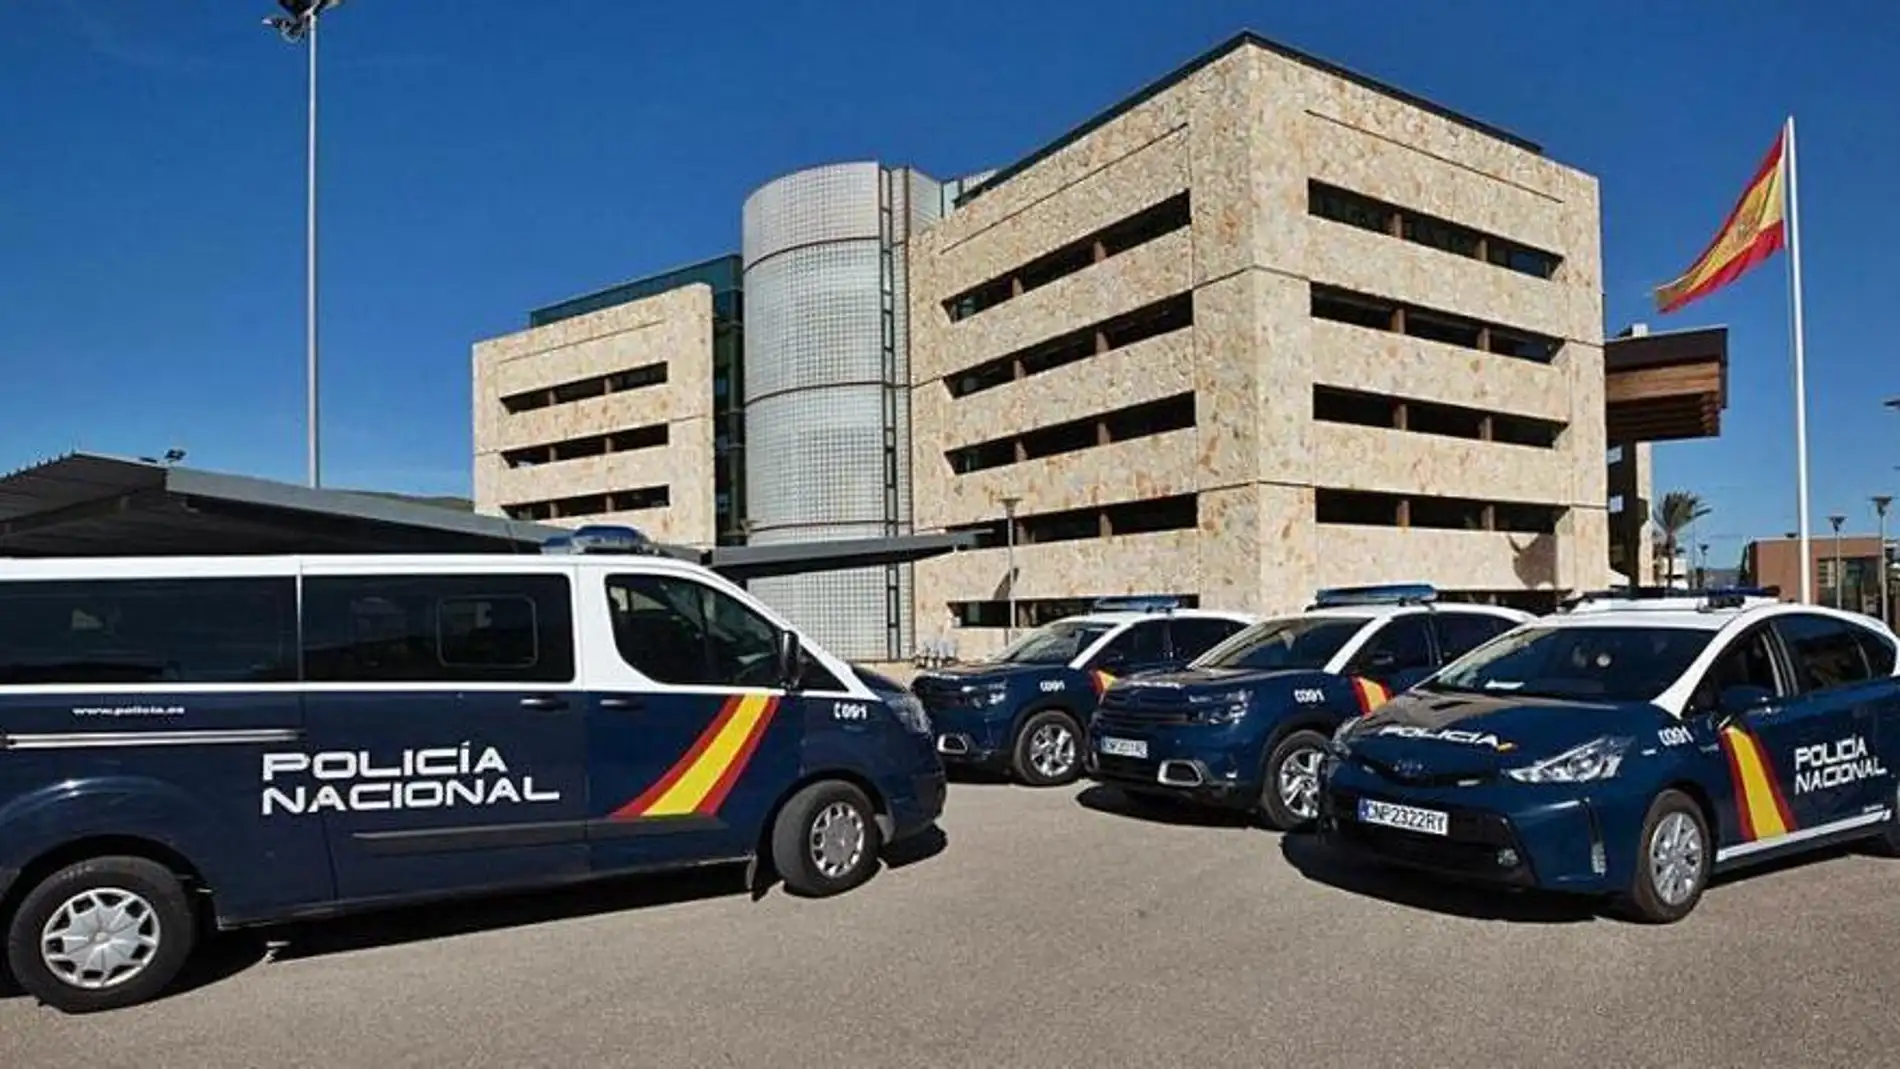 Un Policía Nacional fuera de servicio detiene en Ibiza a un individuo con un coche robado y buscado por tres robos en establecimiento